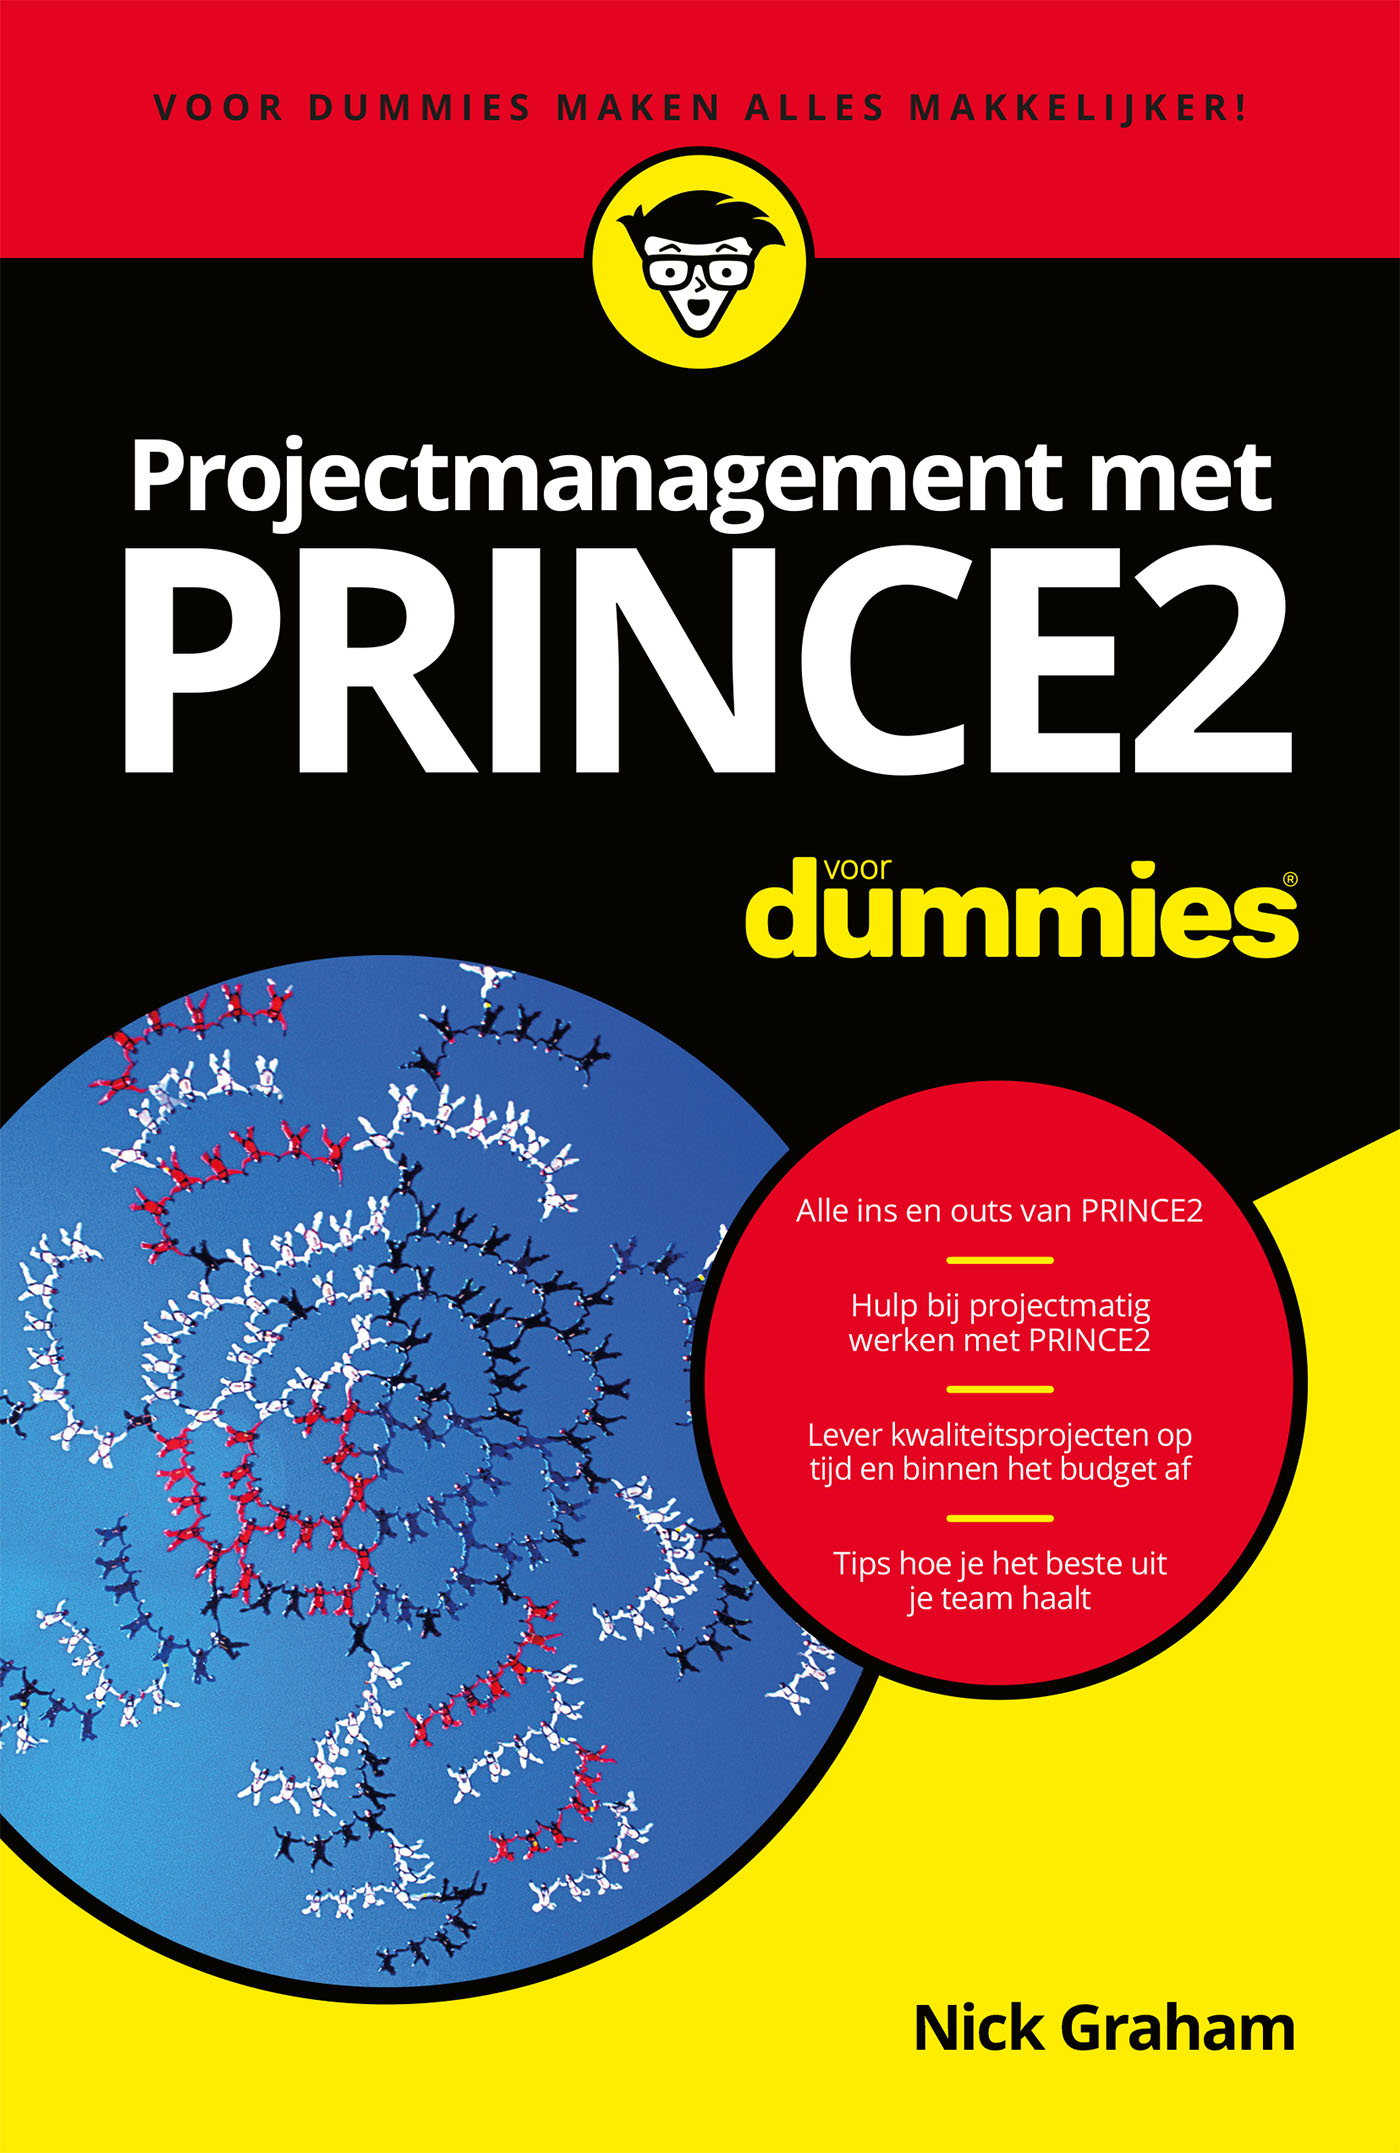 Projectmanagement met PRINCE2 voor Dummies (Ebook)